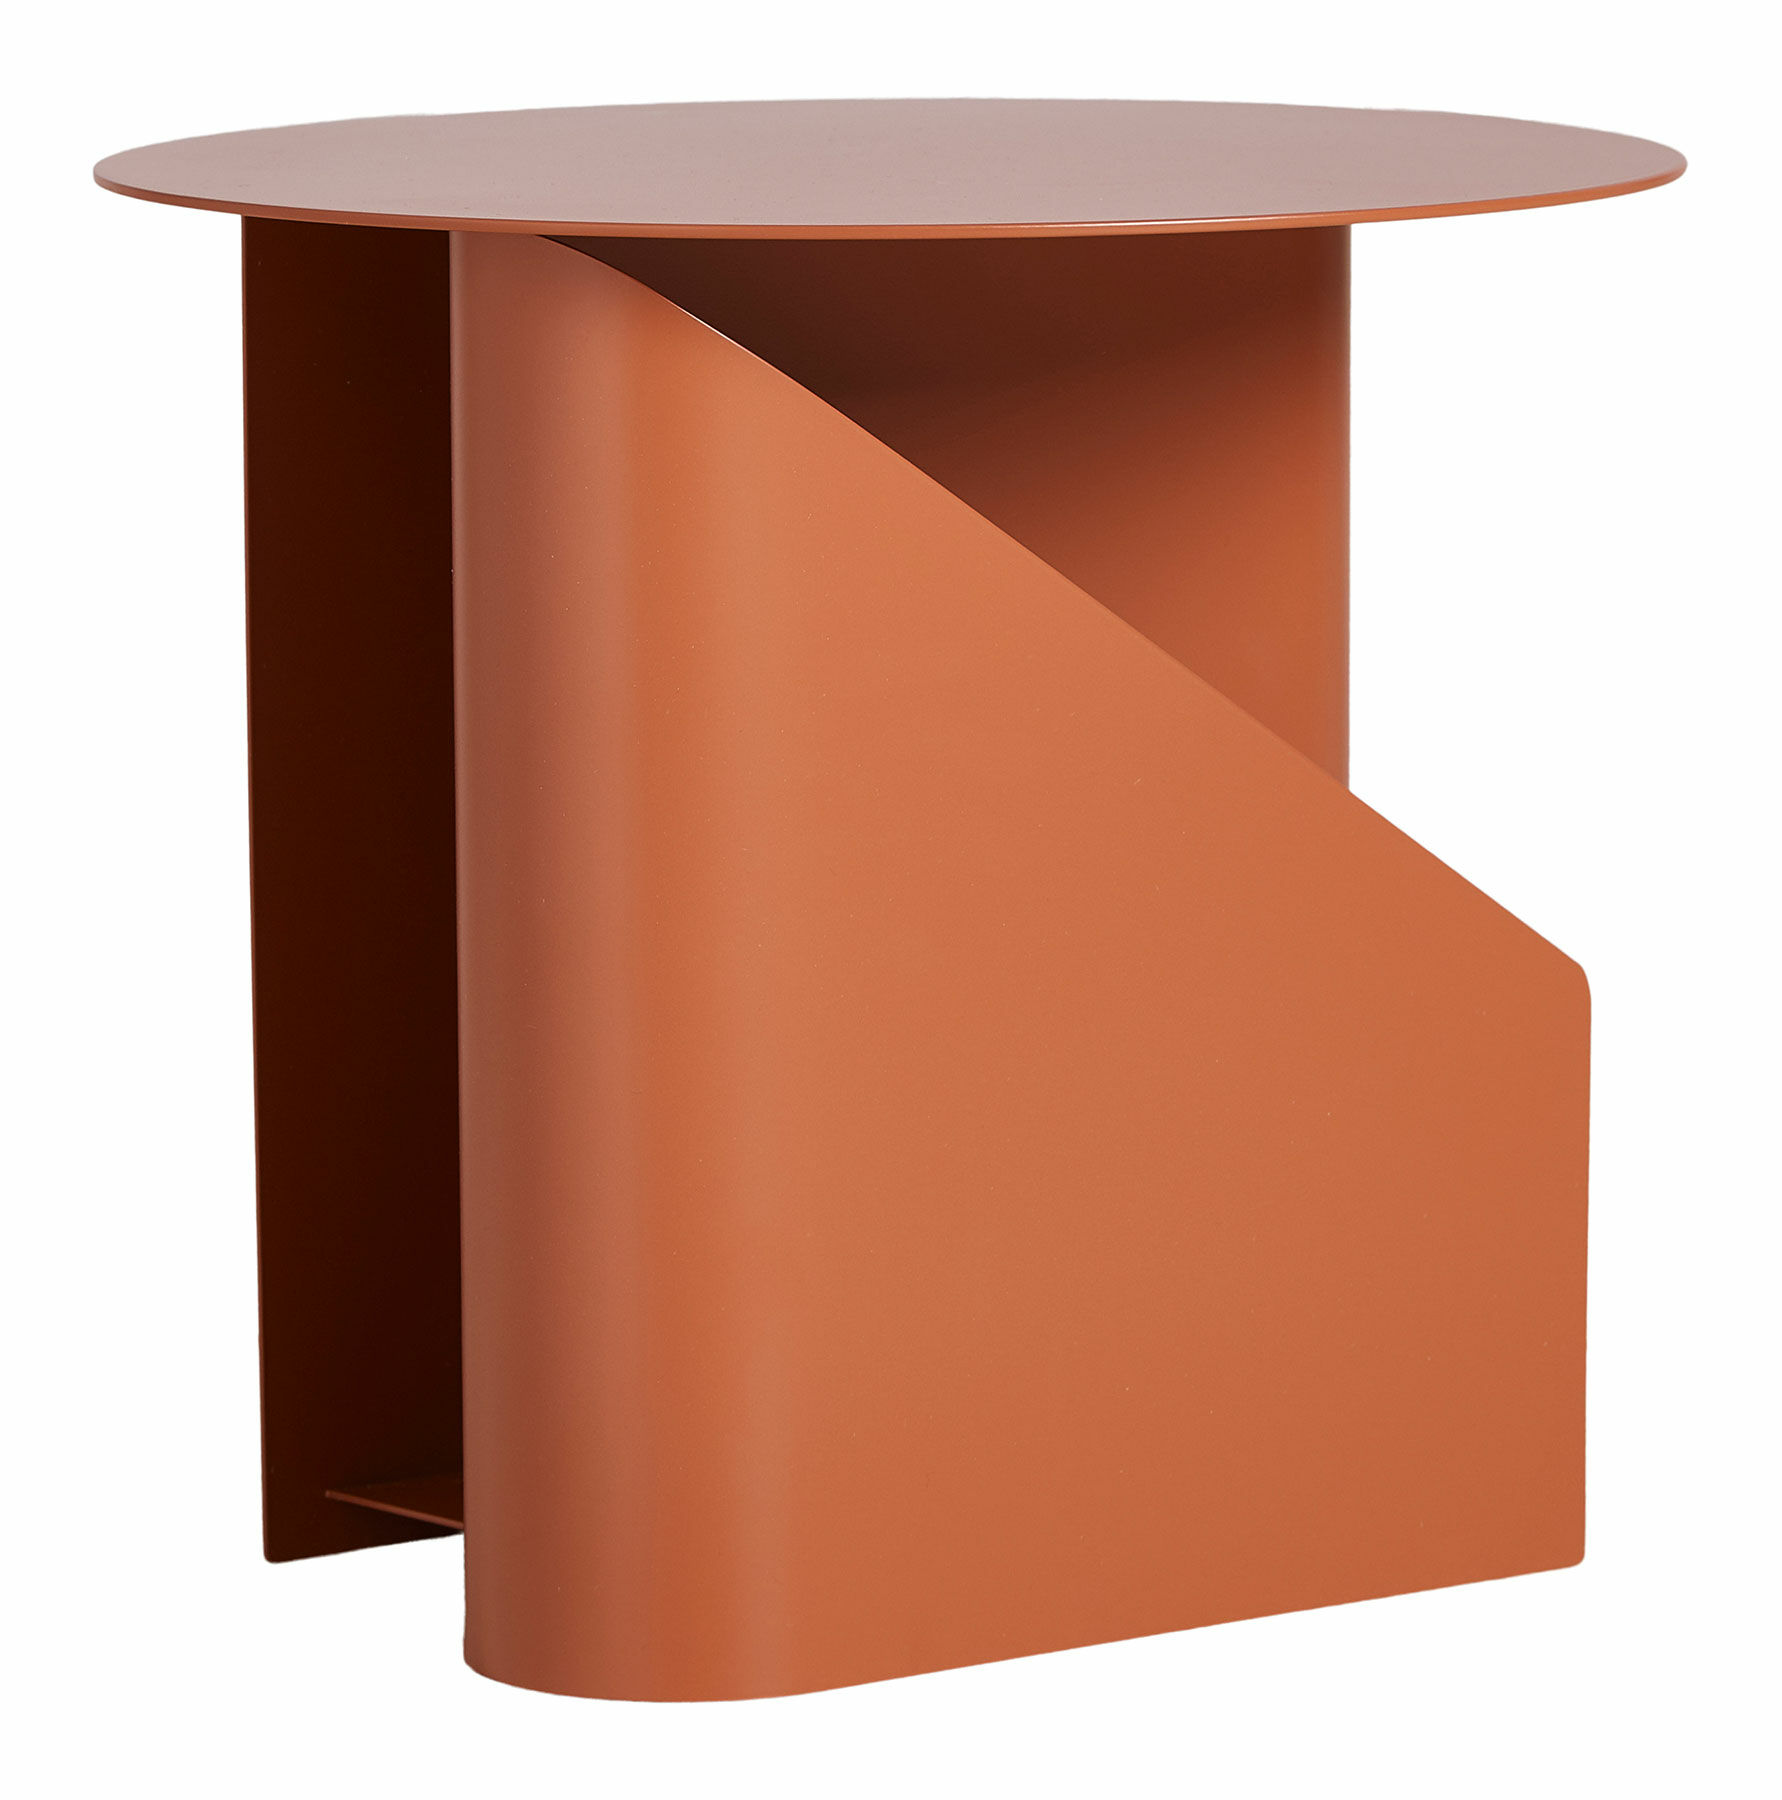 Table d'appoint "Sentrum", version orange brûlé von Woud